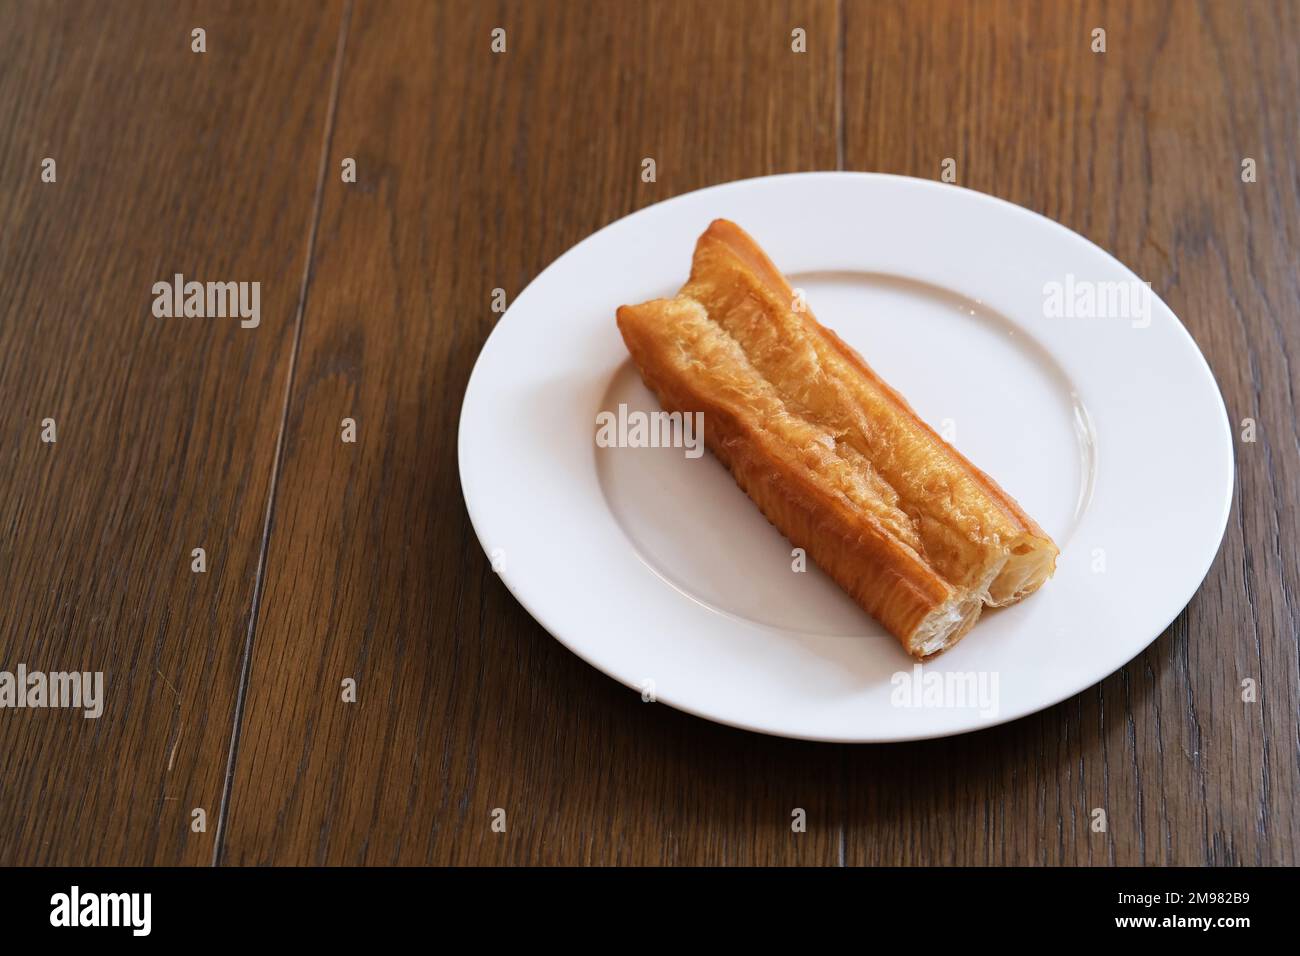 Un morceau de youtiao chinois (bâton de pâte frite) sur une assiette sur une table en bois. En-cas traditionnel pour le petit déjeuner en Chine Banque D'Images